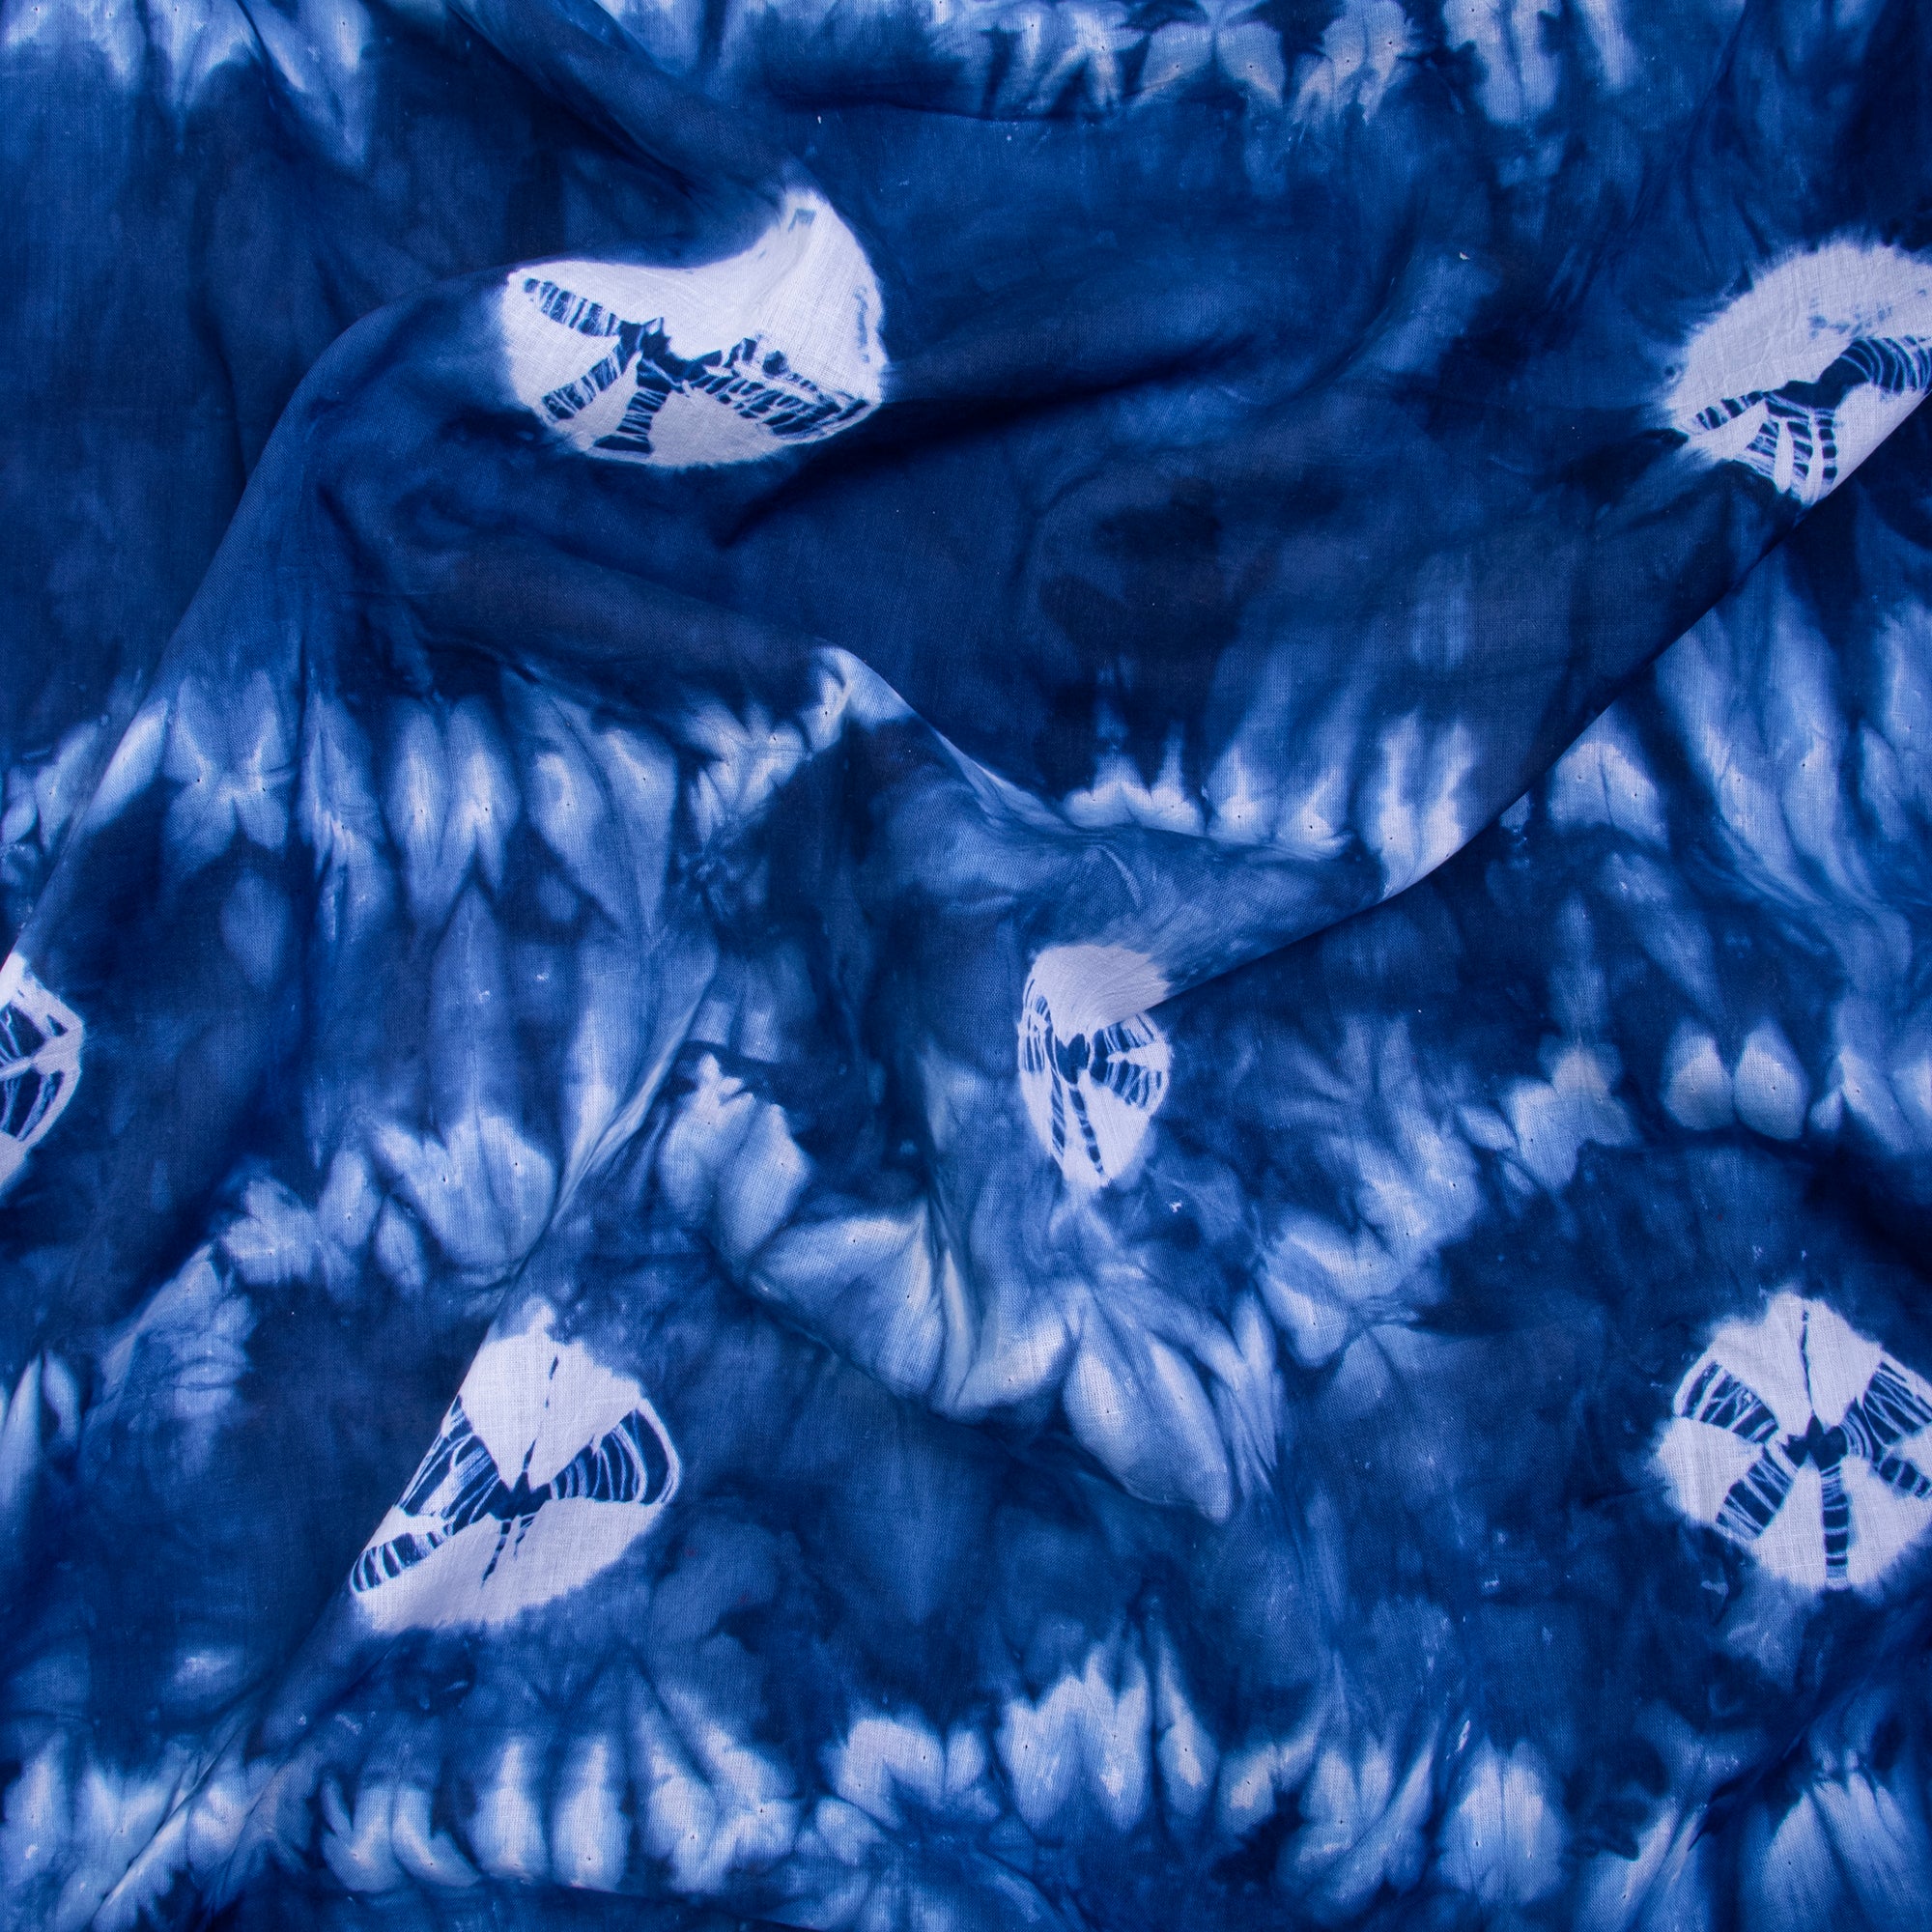 Aqua Aura Shibori Print Running Fabric Tie Dye